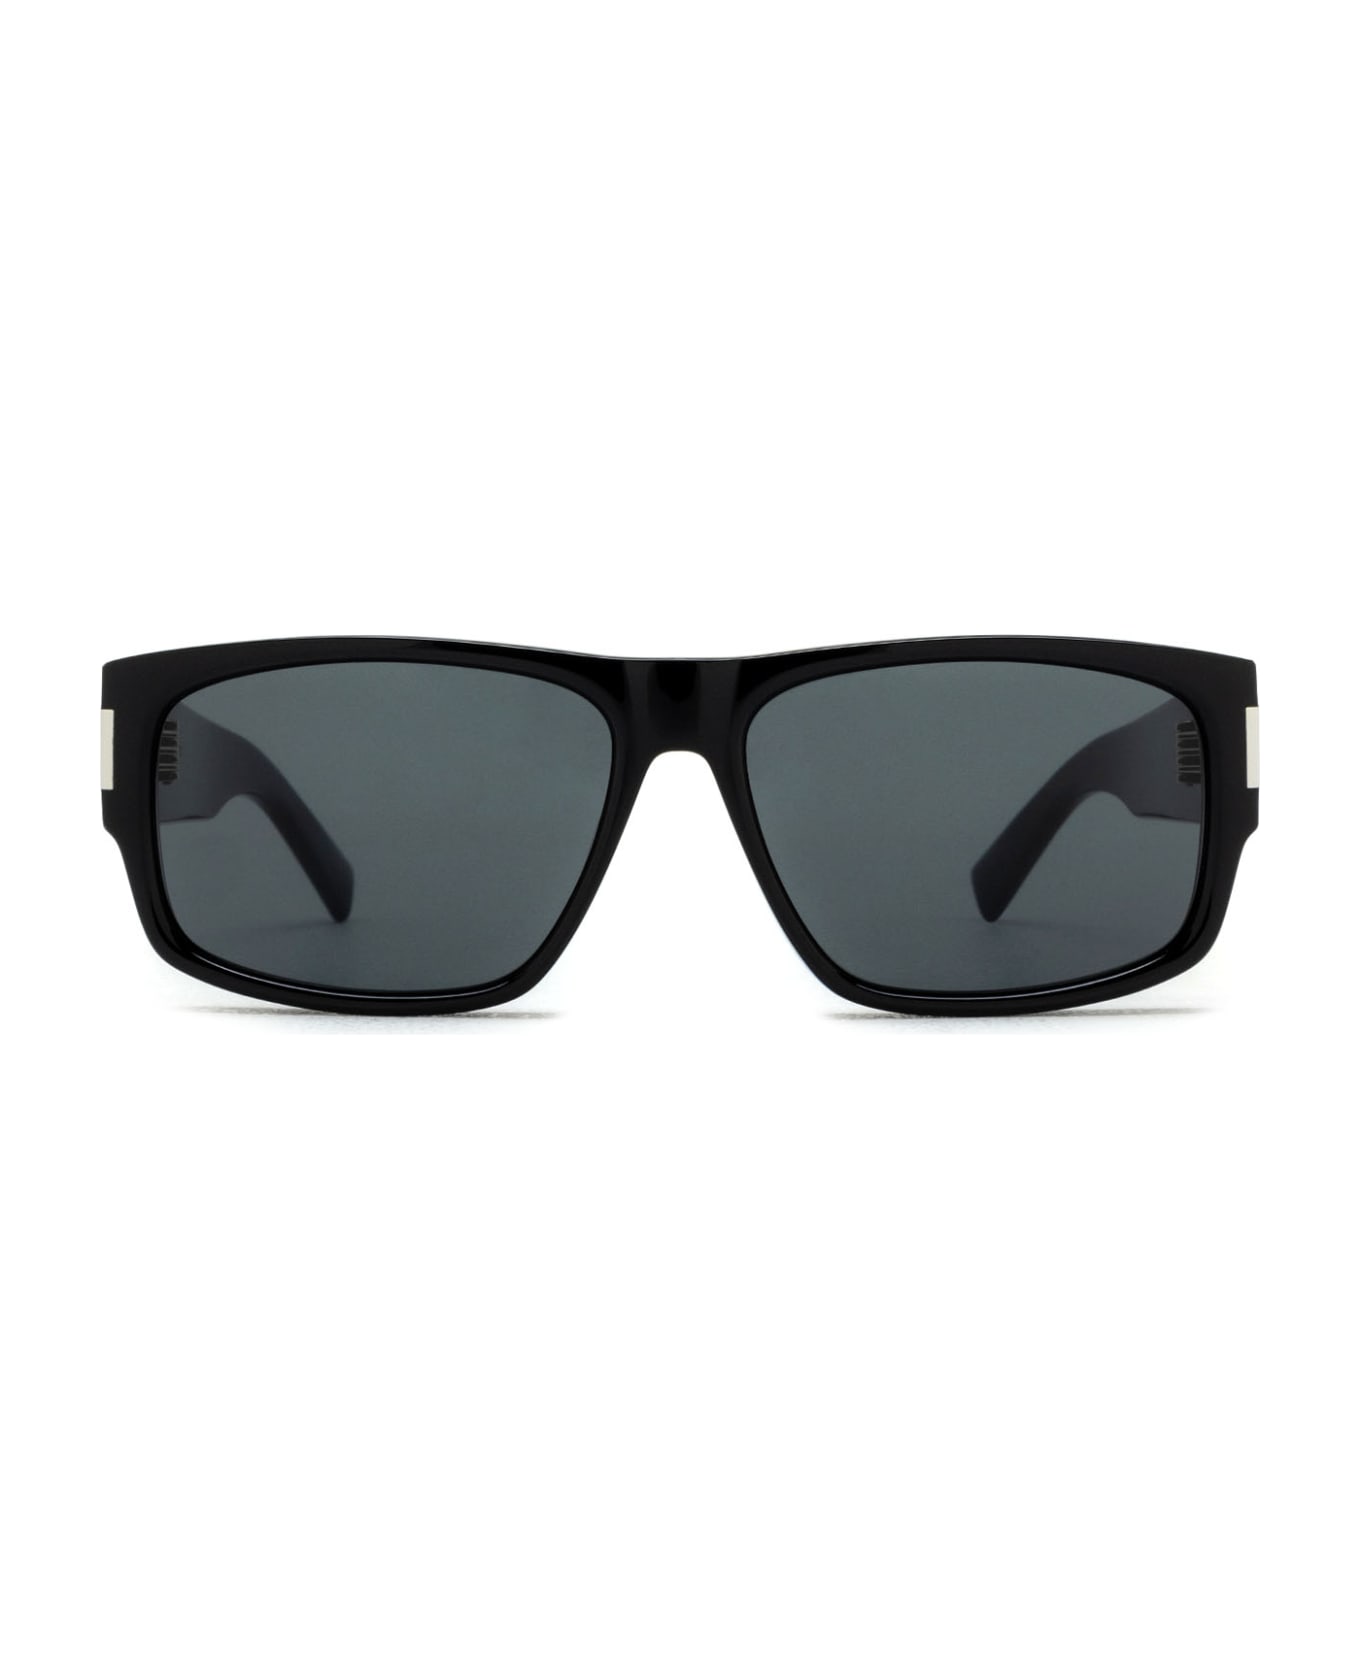 Saint Laurent Eyewear Sl 689 Black Sunglasses - Black